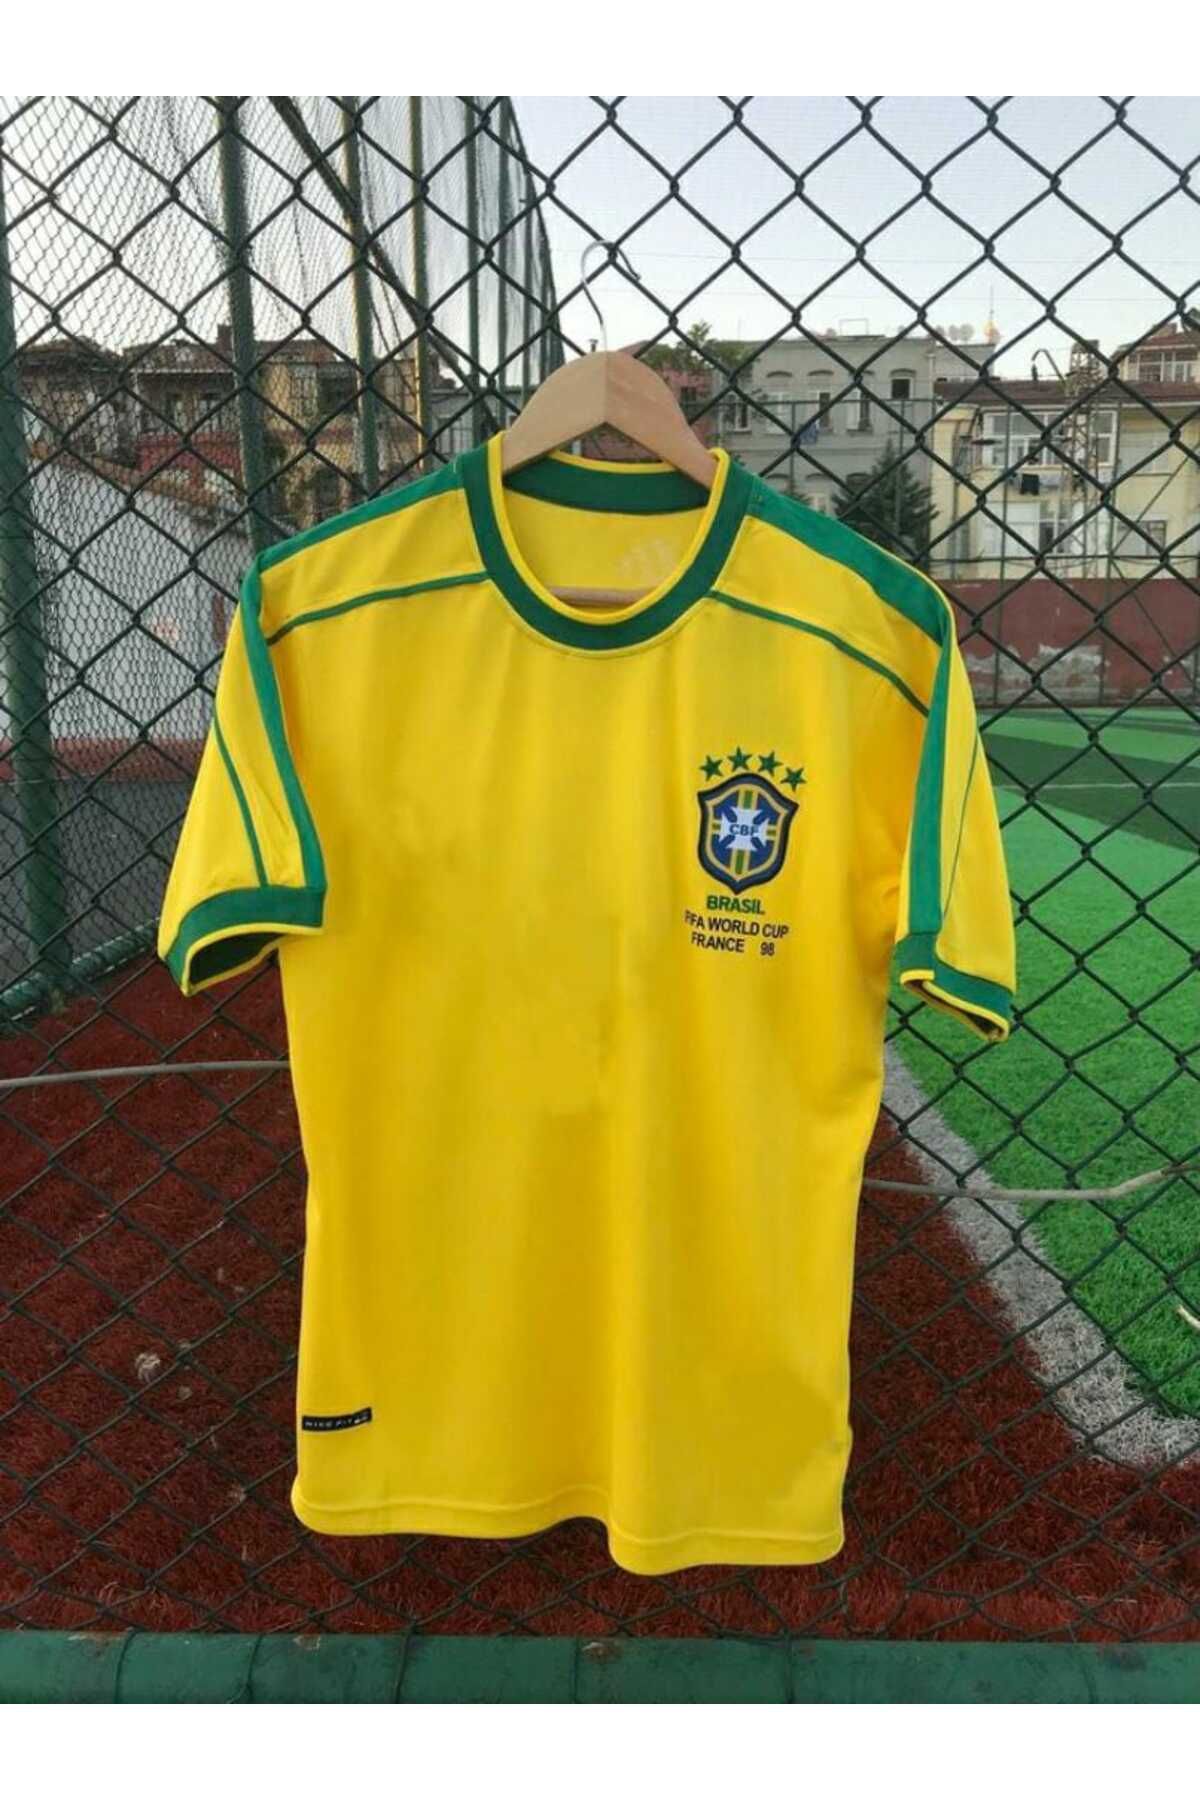 BYSPORTAKUS Brezilya Milli Takımı 98 Dünya Kupası Neymar Jr Nostalji Forması